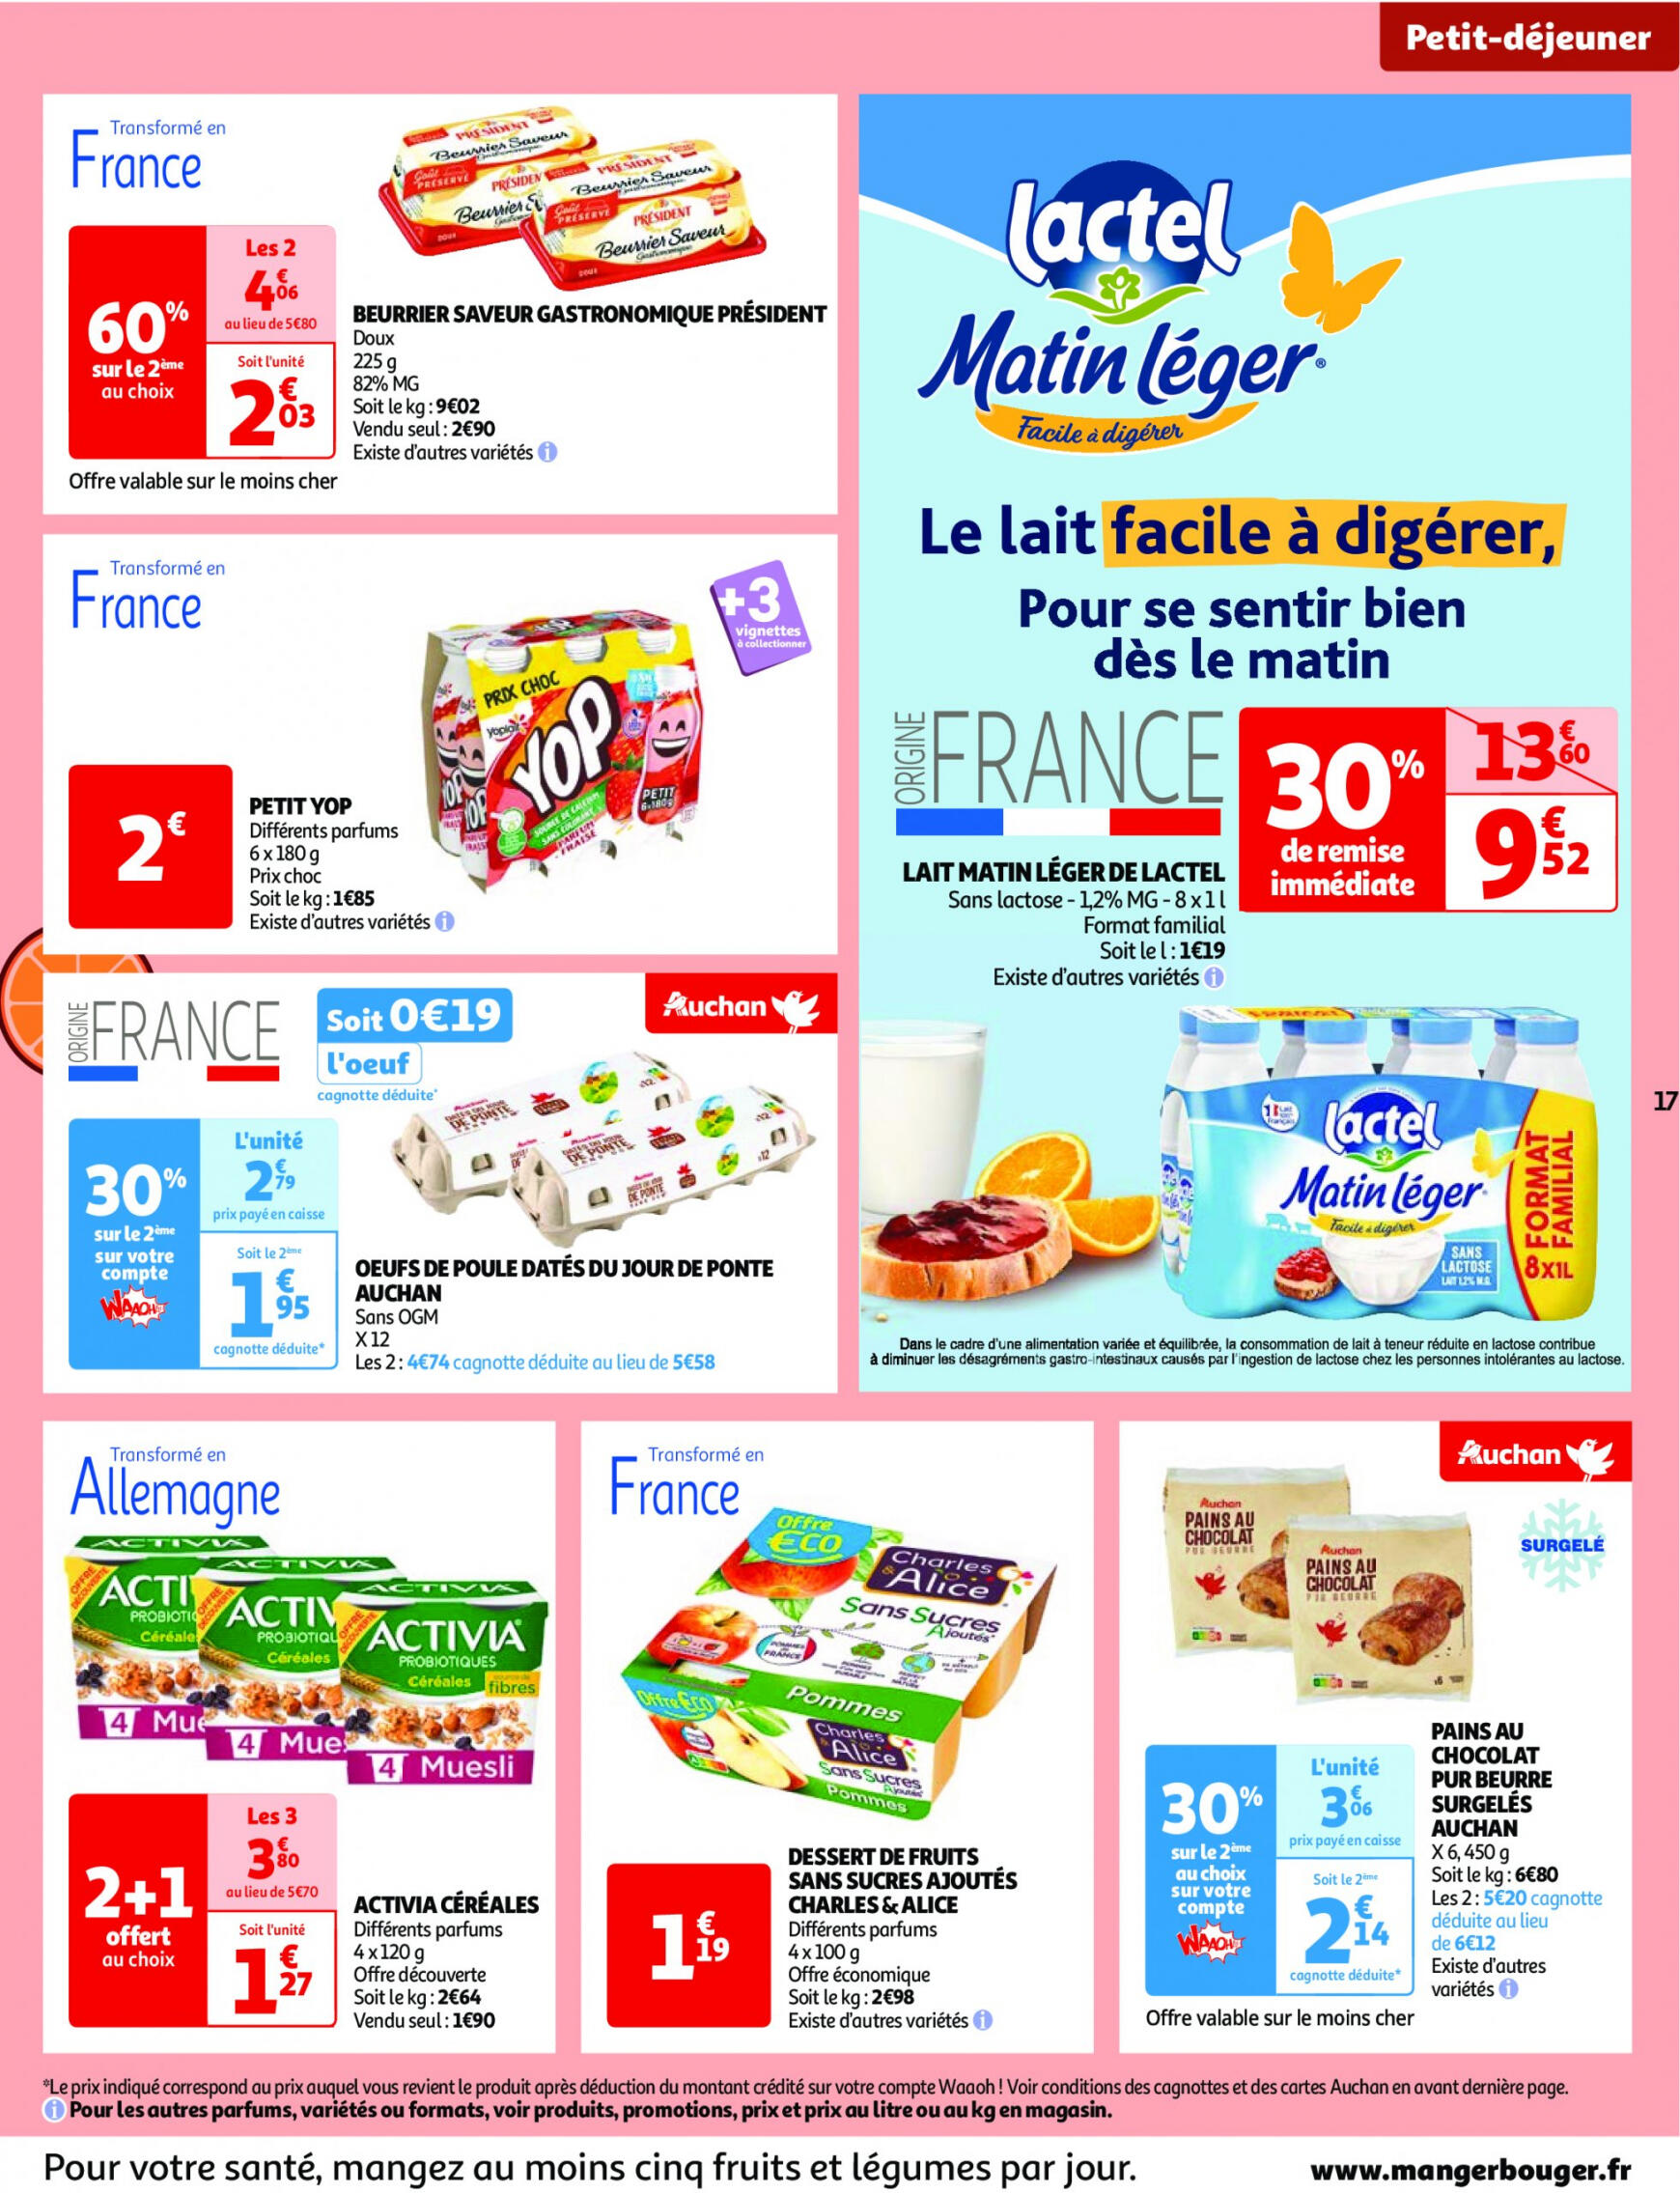 auchan - Prospectus Auchan actuel 14.05. - 21.05. - page: 17